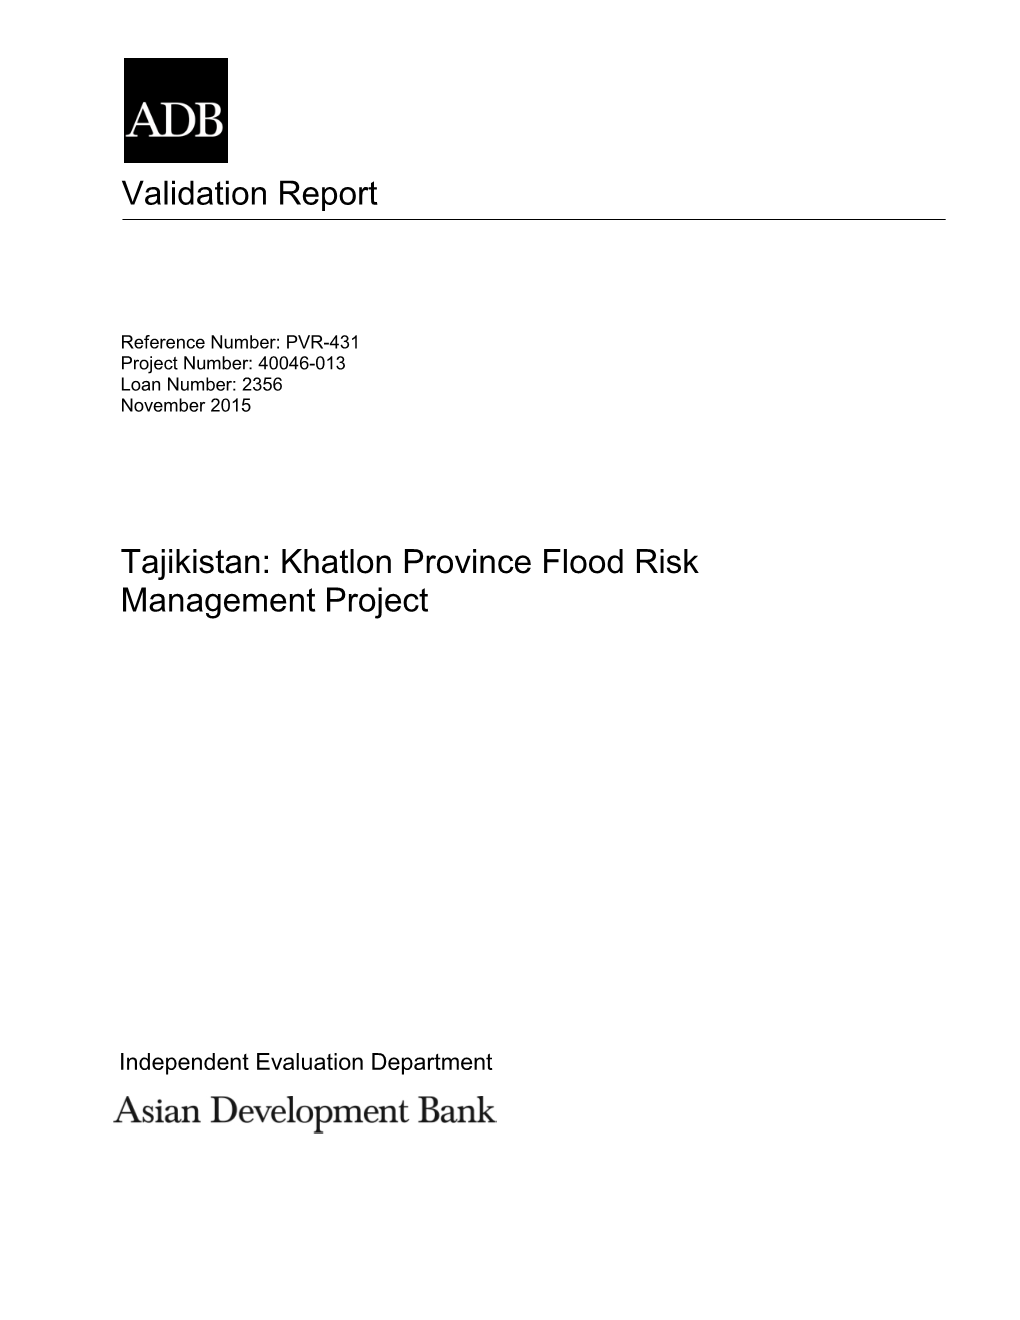 20151113 PVR 431 L2356 TAJ Khatlon Province Flood Risk